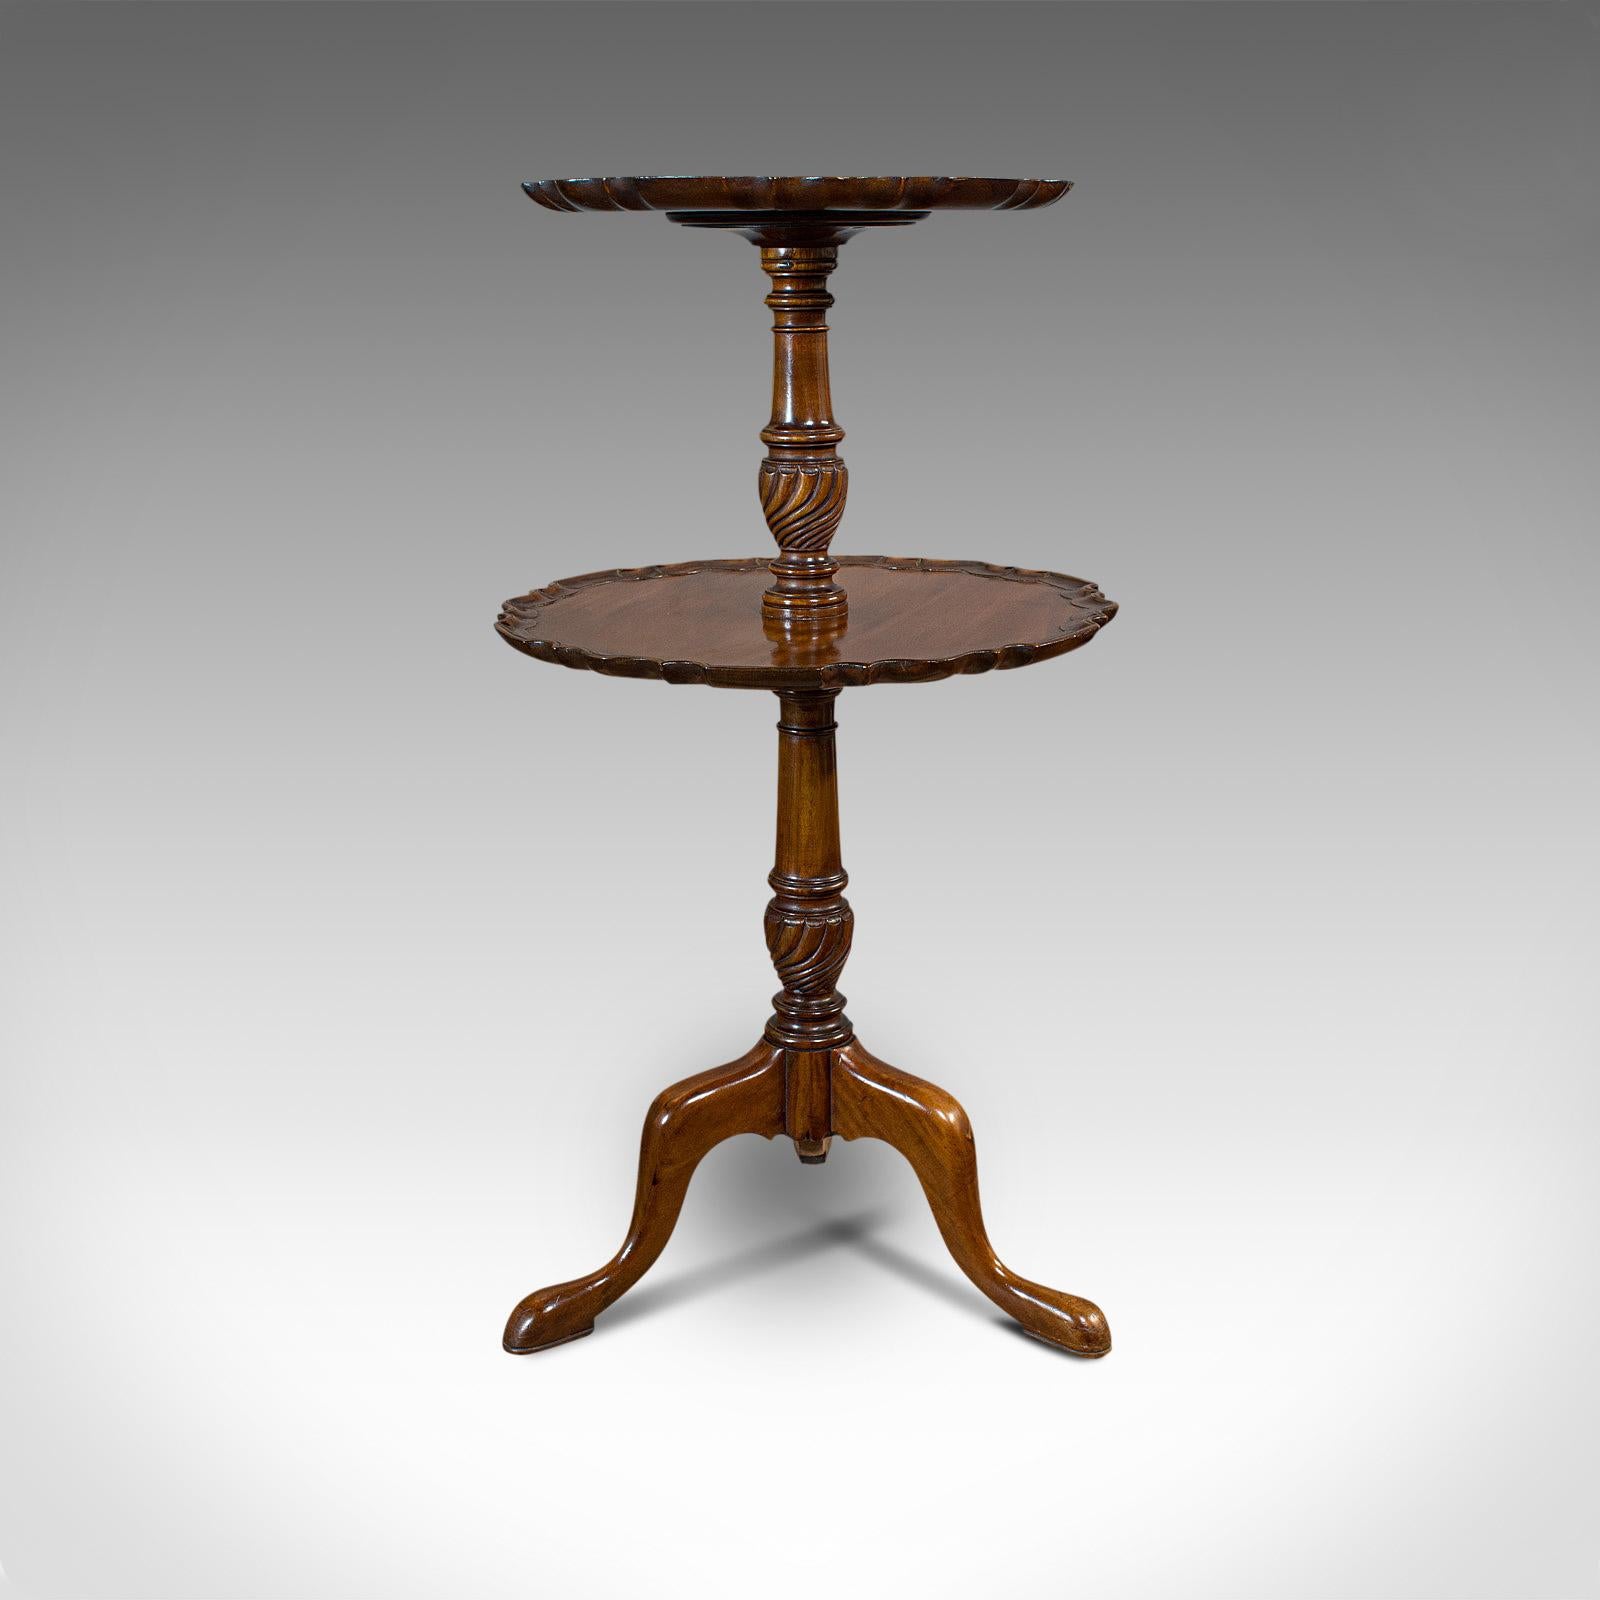 Dies ist ein antiker Dingsbumsständer. Ein englischer, zweigeschossiger Mahagoni-Tisch für den Nachmittagstee aus der viktorianischen Zeit, um 1900.

Attraktive Form und nützliche Proportionen
Zeigt eine wünschenswerte gealterte